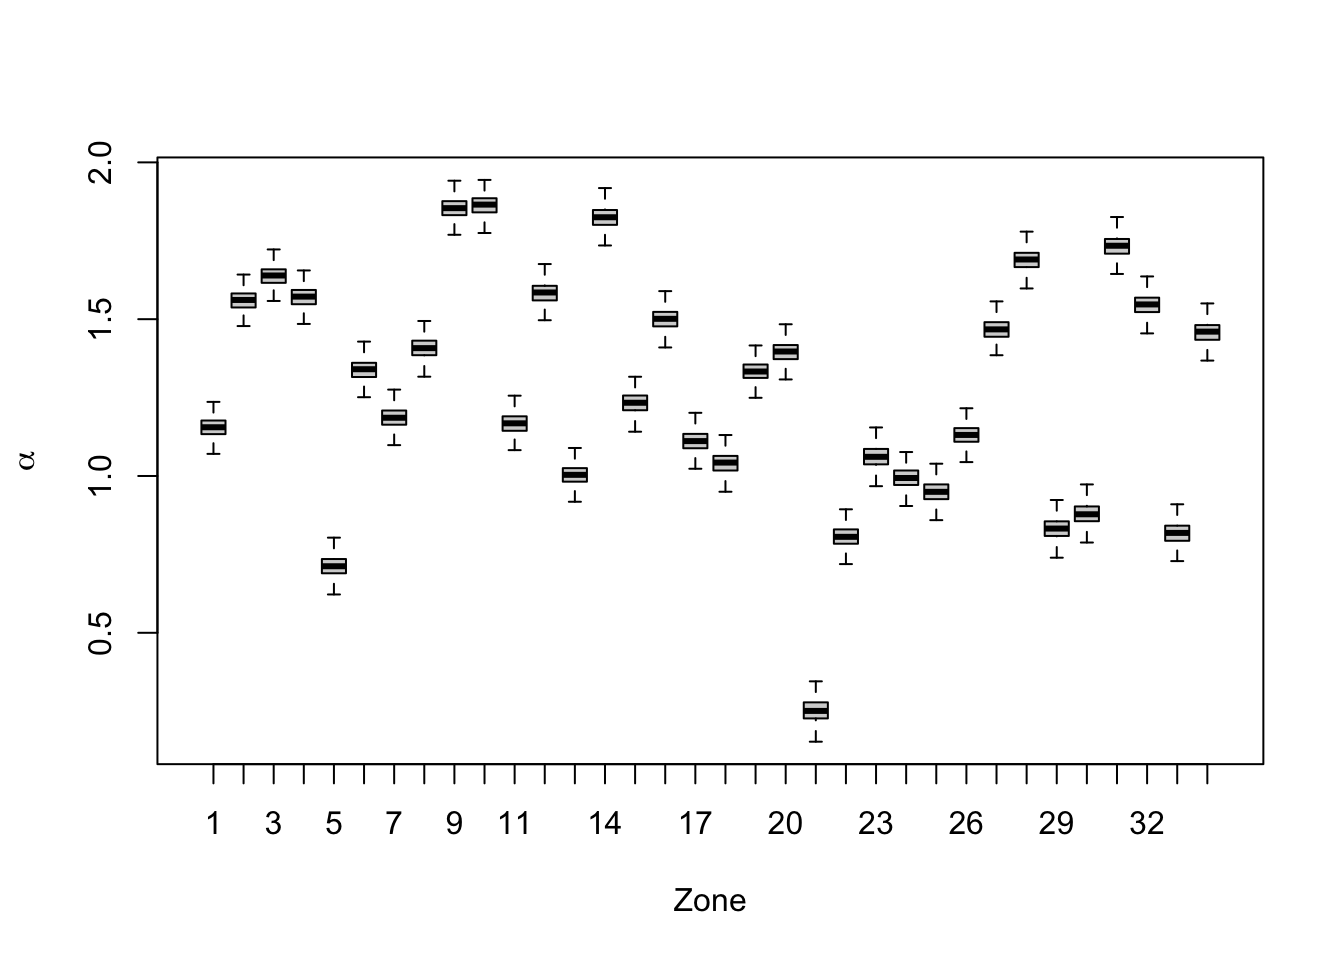 Boxplots of $\alpha_i$'s for 34 zones from Model Z4b.